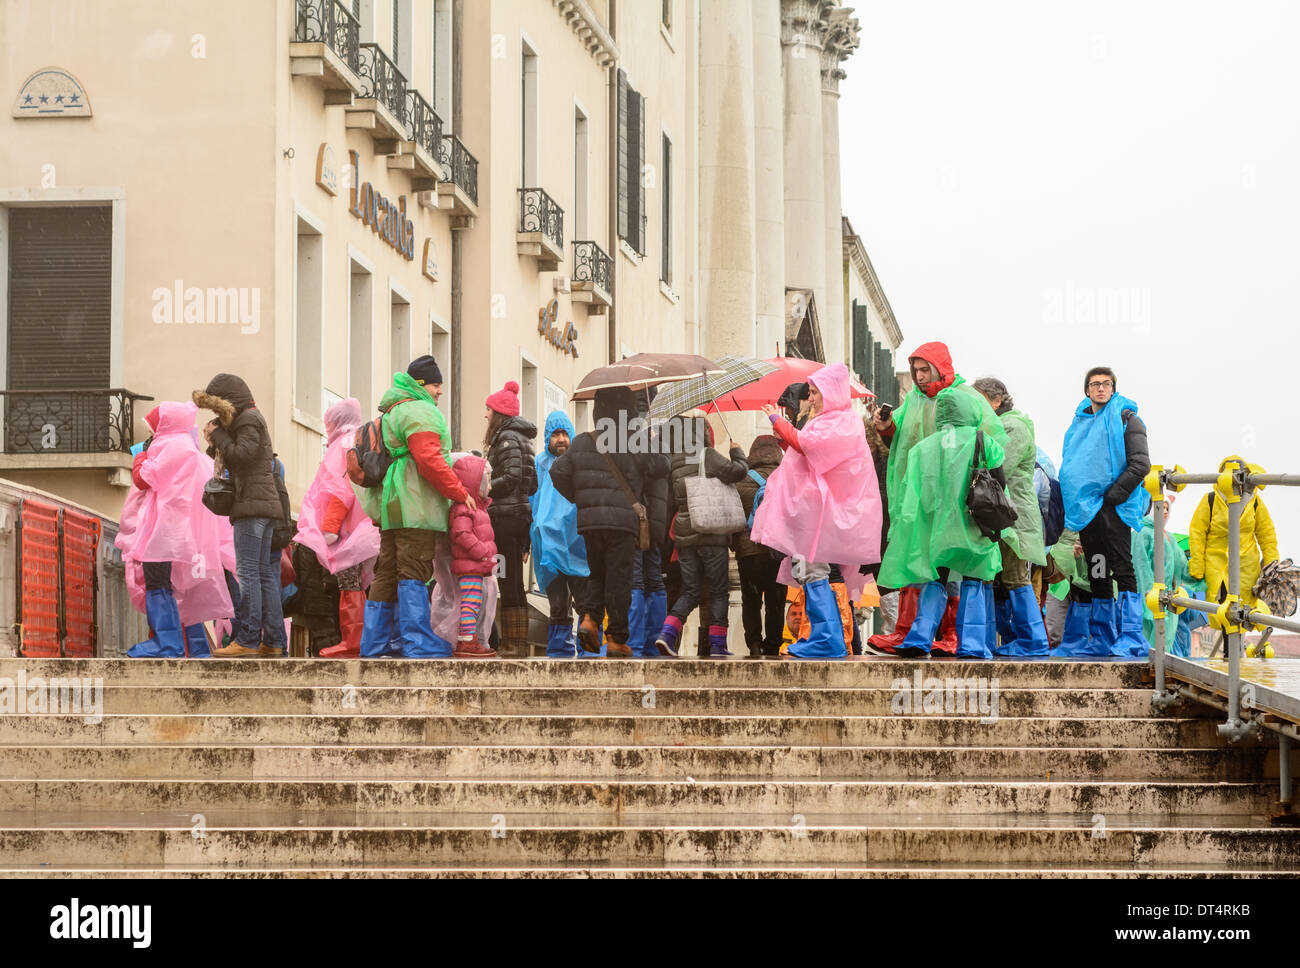 Venise, Italie. Les touristes et les enfants par temps de pluie et de vêtements de pluie, debout sur un pont pendant la pluie. Banque D'Images